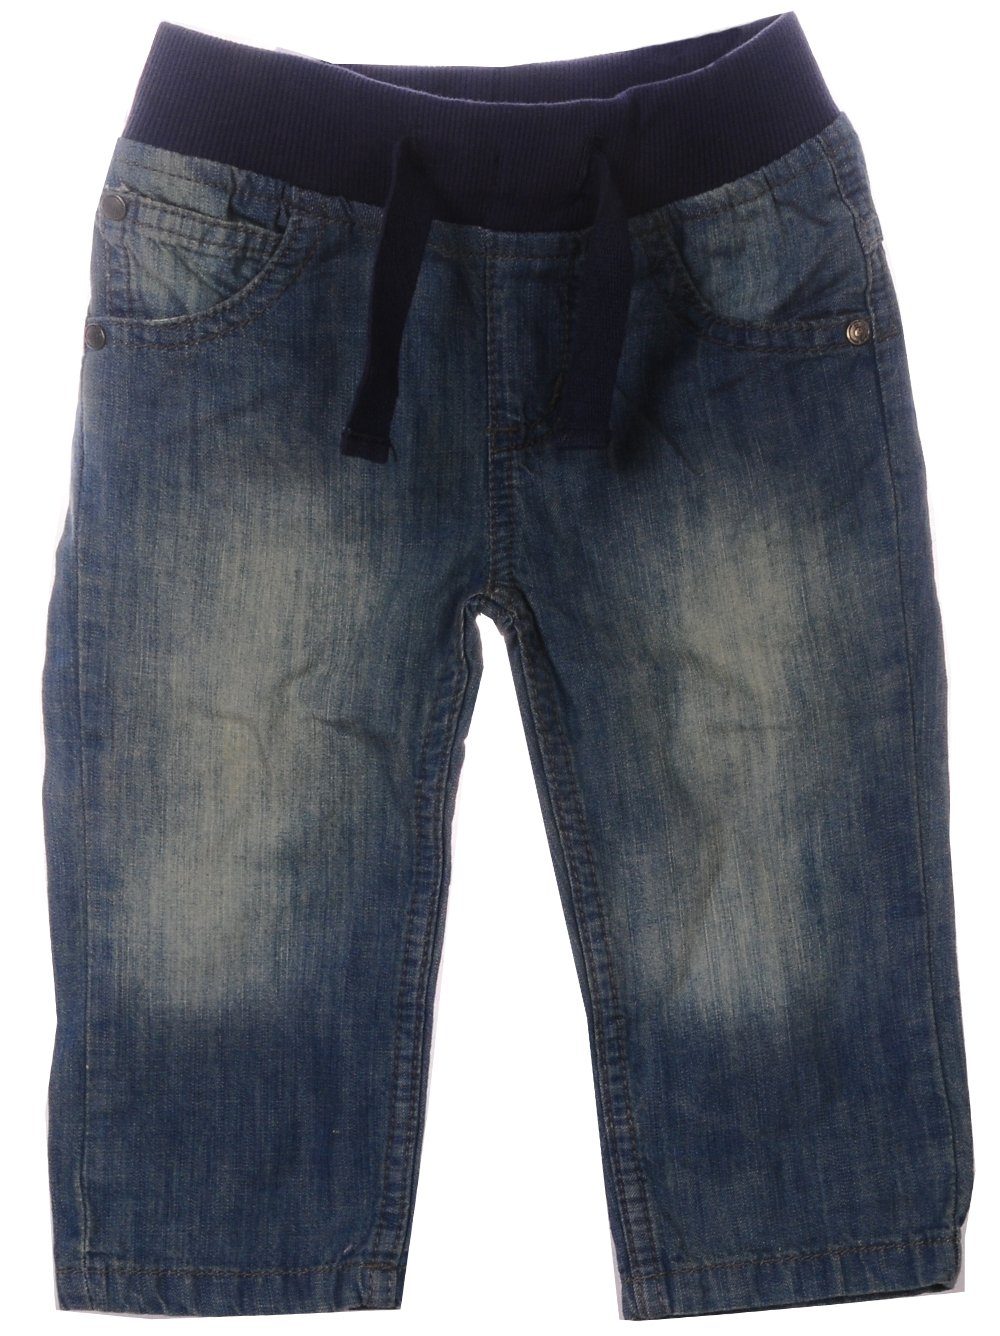 Hose & Shorts Jeans für Babys und Kinder 62 68 80 86 | Baby-Sets